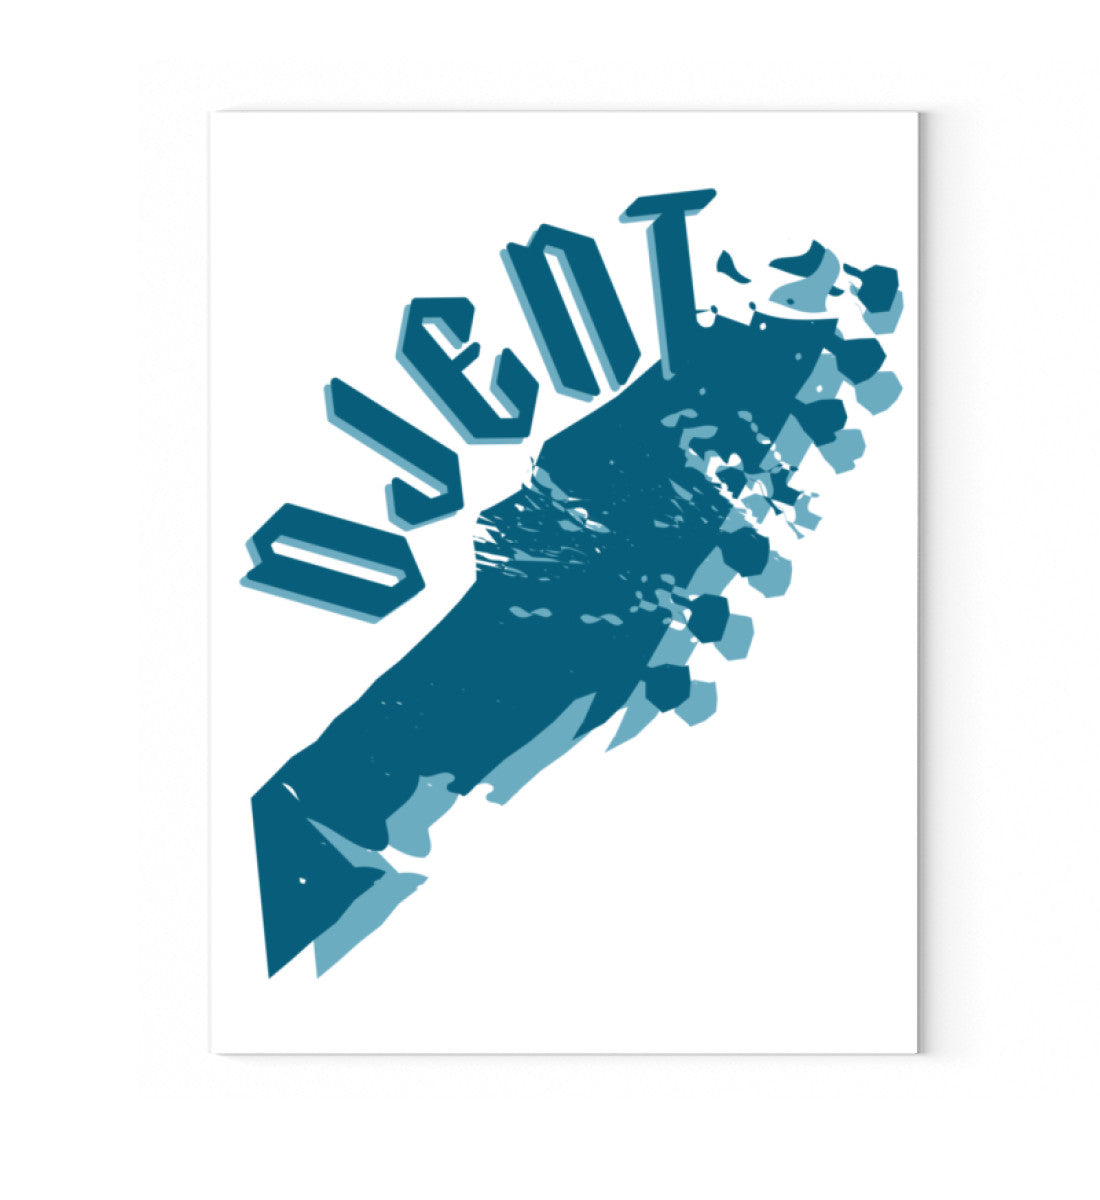 Leinwandbild auf Holzkeilrahmen aufgezogen mit Druck Design der Roger Rockawoo Kollektion Djent Guitar